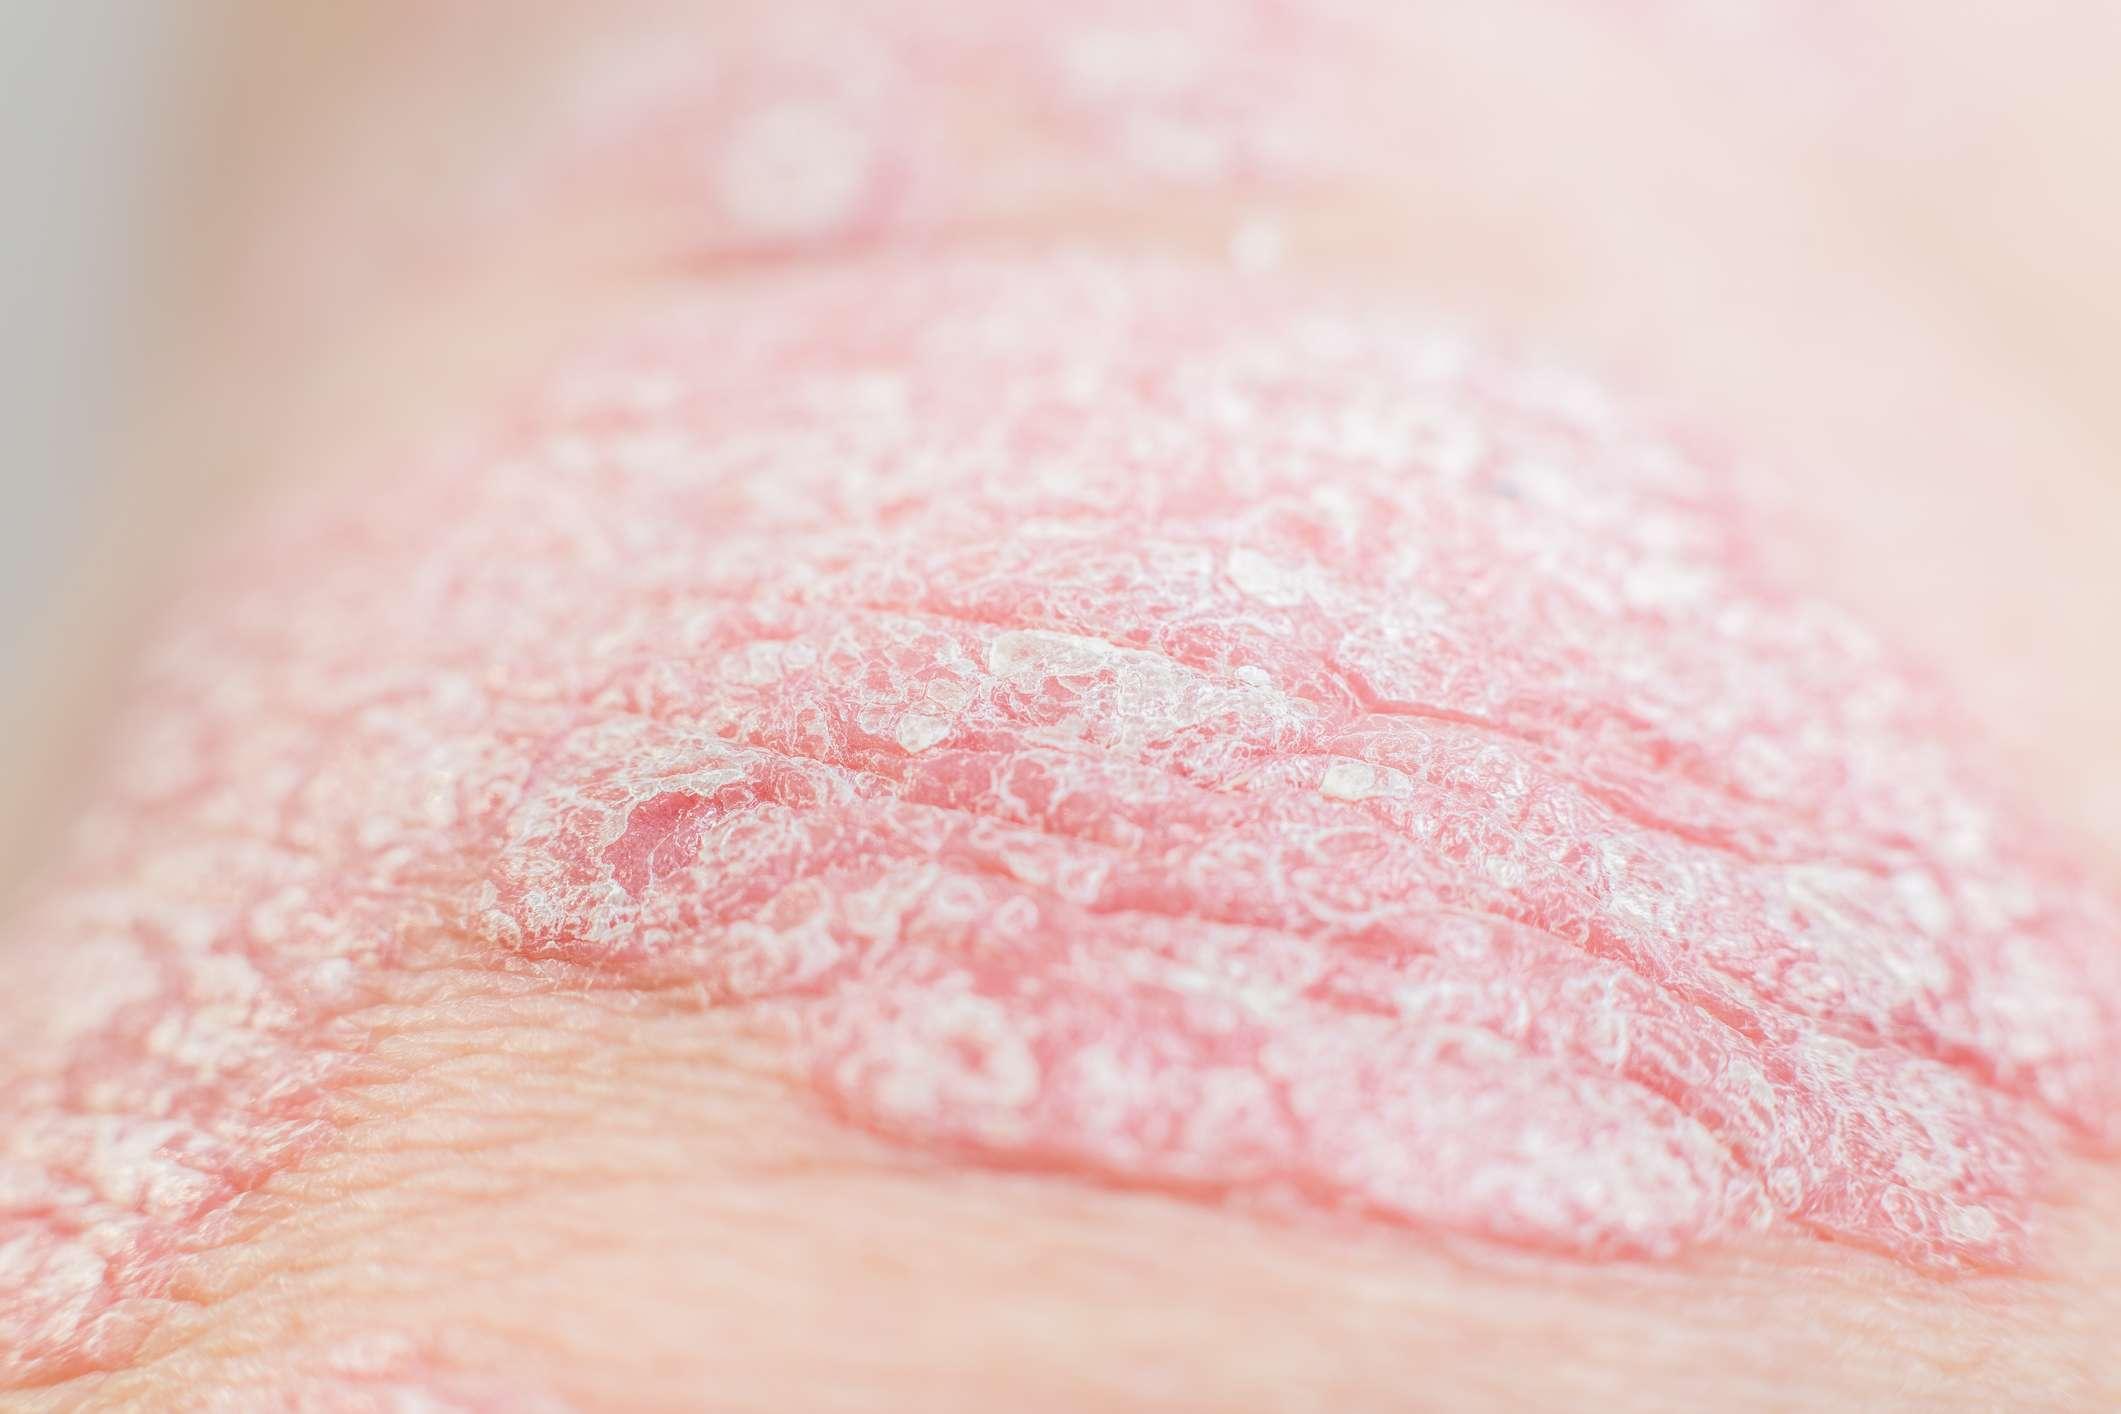 Nahaufnahme akute Psoriasis ist eine unheilbare dermatologische Autoimmunerkrankung der Haut. Großer roter, entzündeter, schuppiger Hautausschlag.Selektiver Fokus